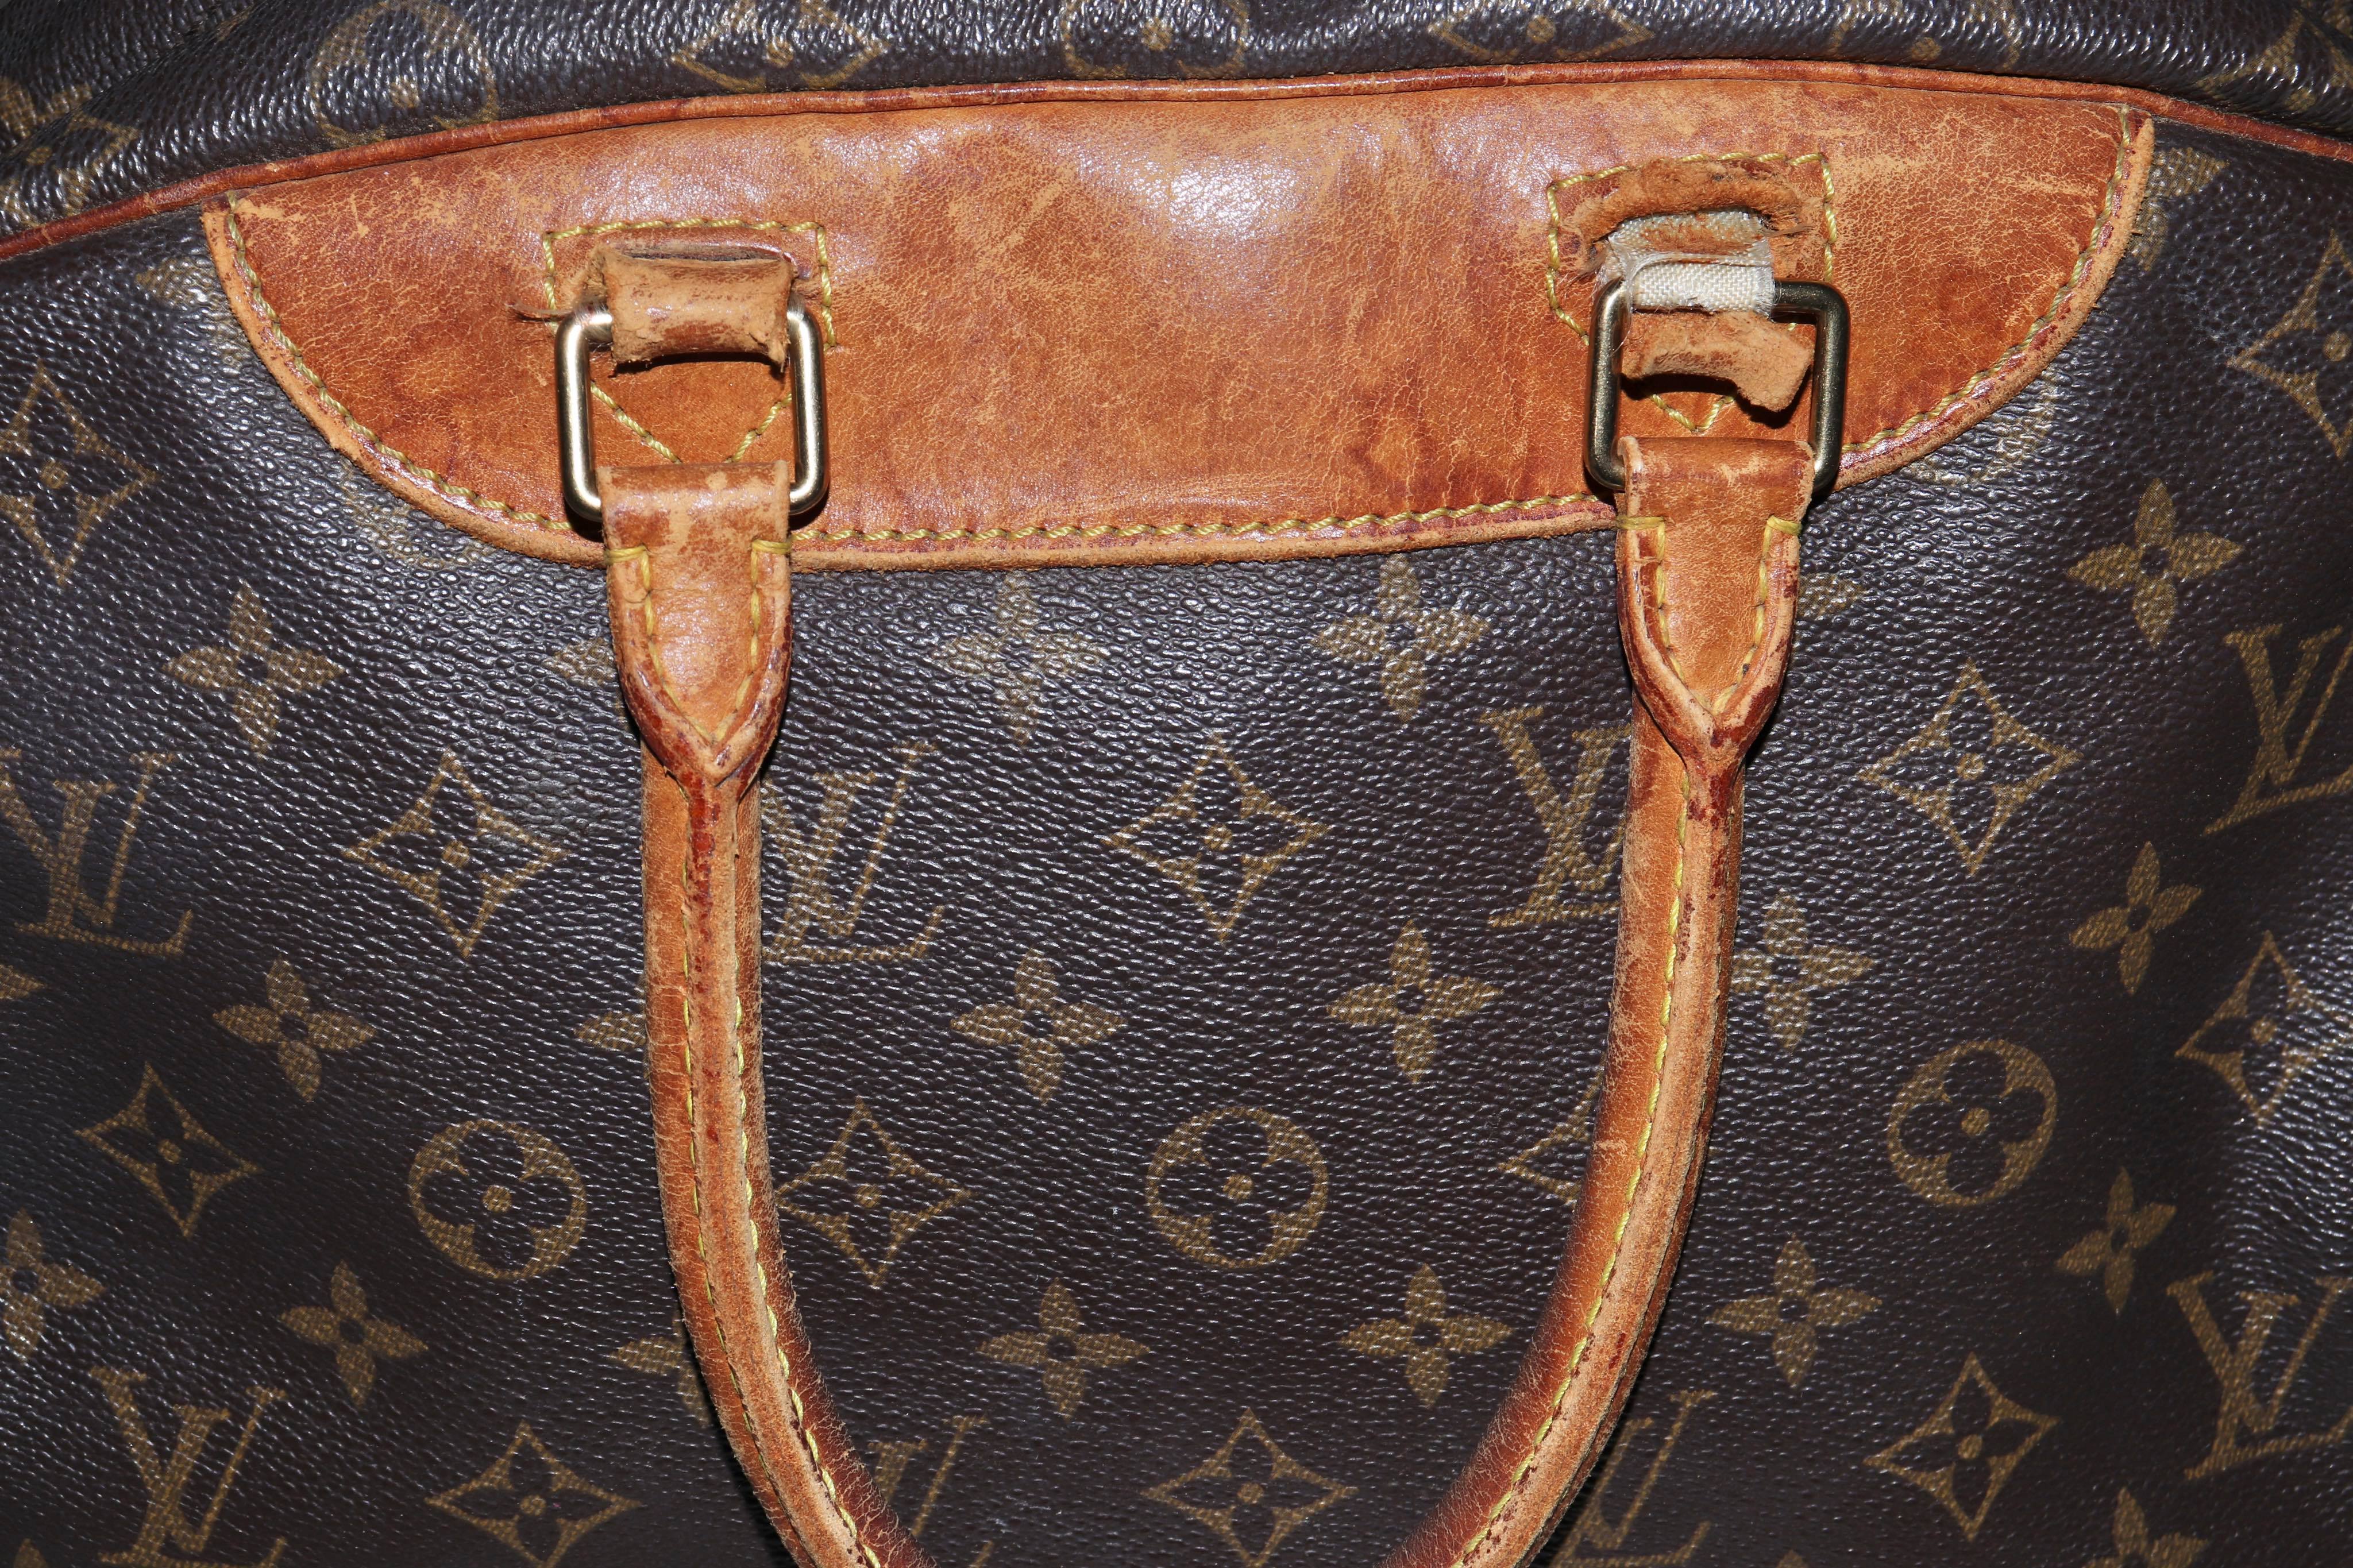 Louis Vuitton Alize Bag (Rare Model)